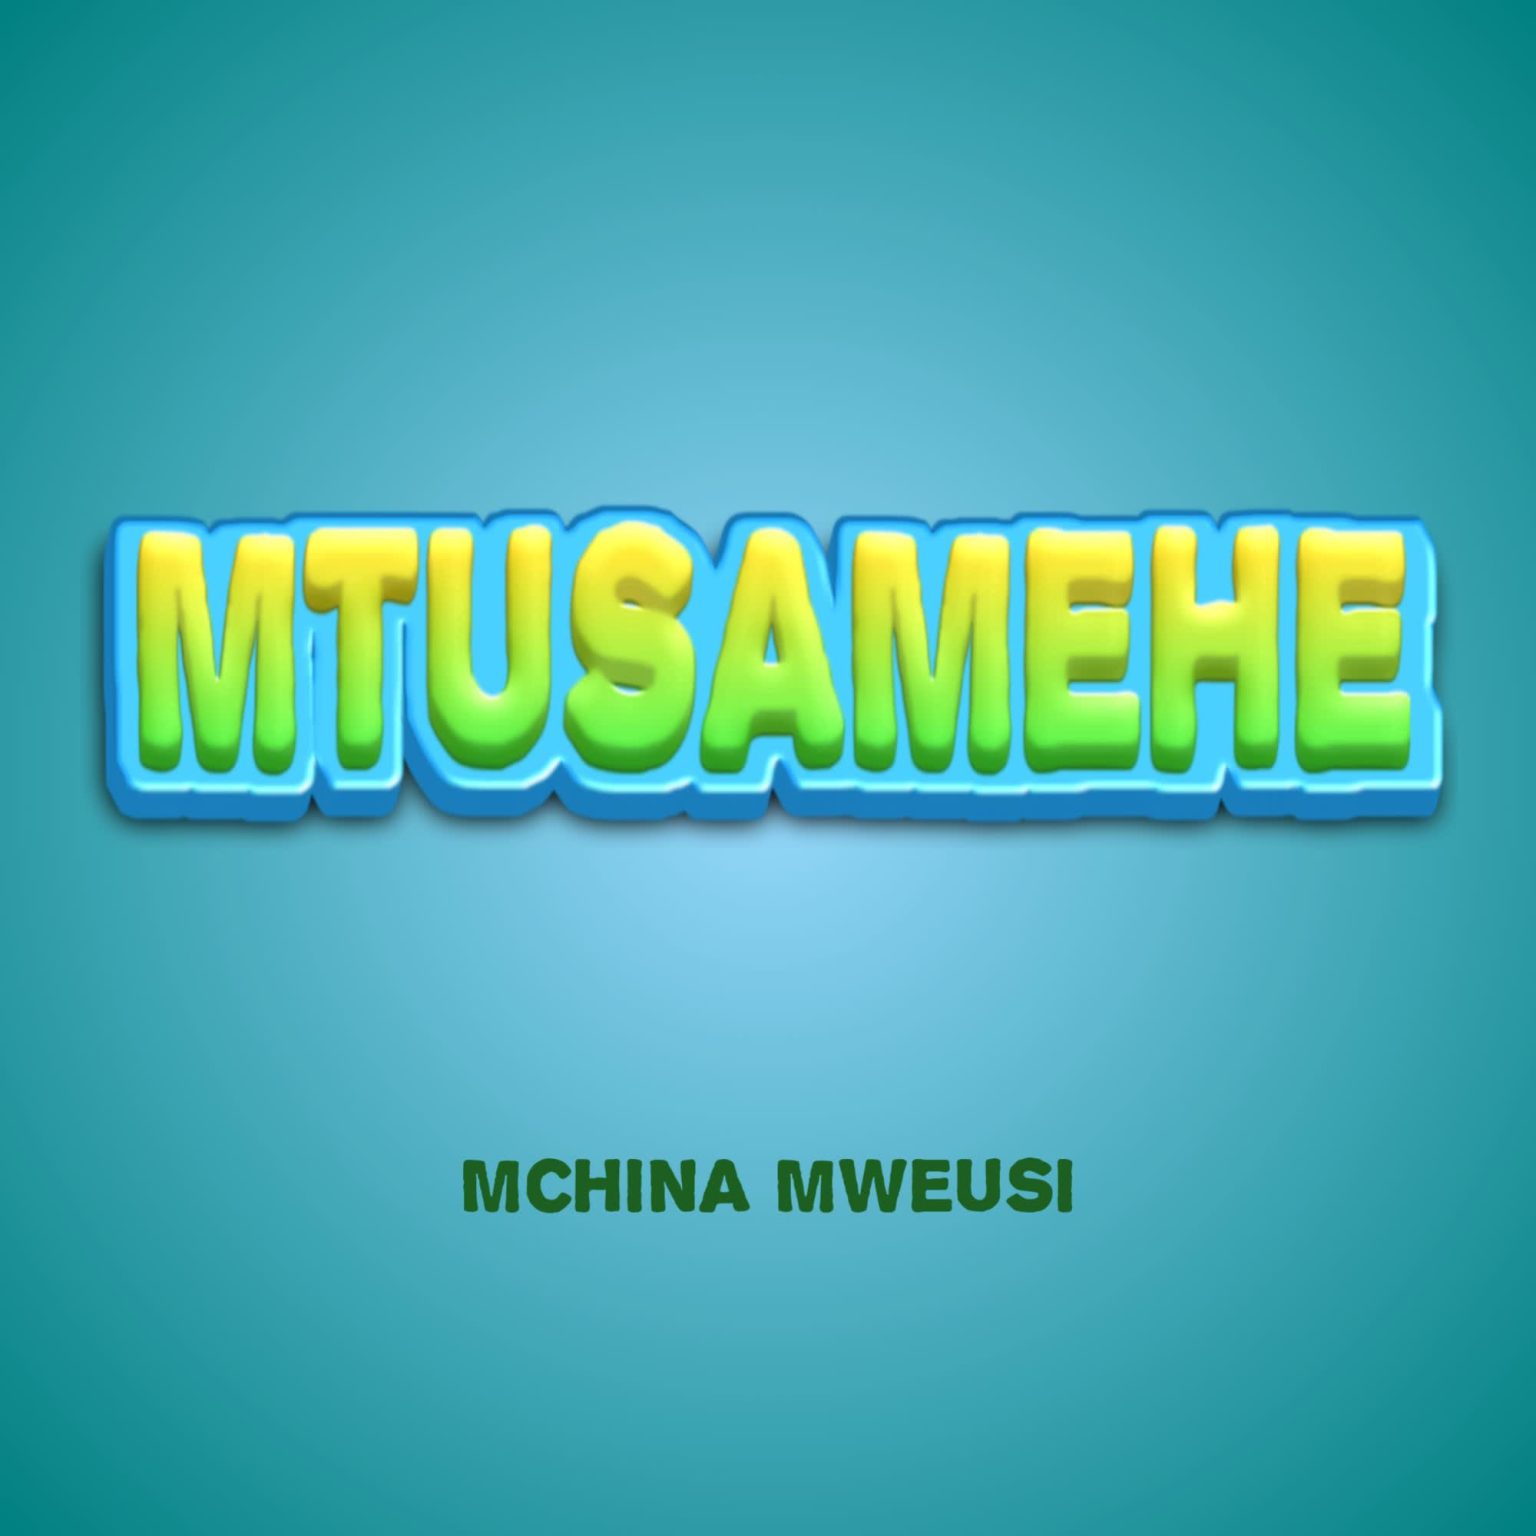 Download Audio | Mchina Mweusi – Mtusamehe